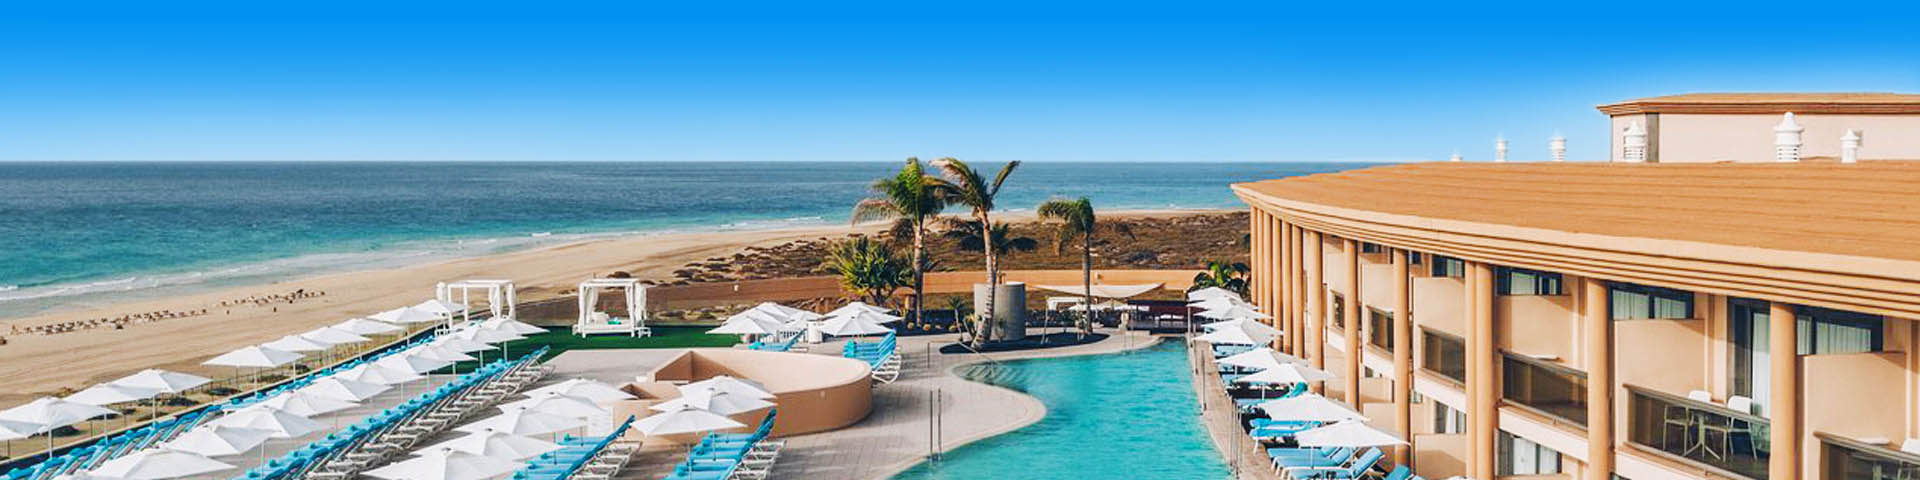 Uitzicht op de zee en het zwembad bij een Iberostar hotel